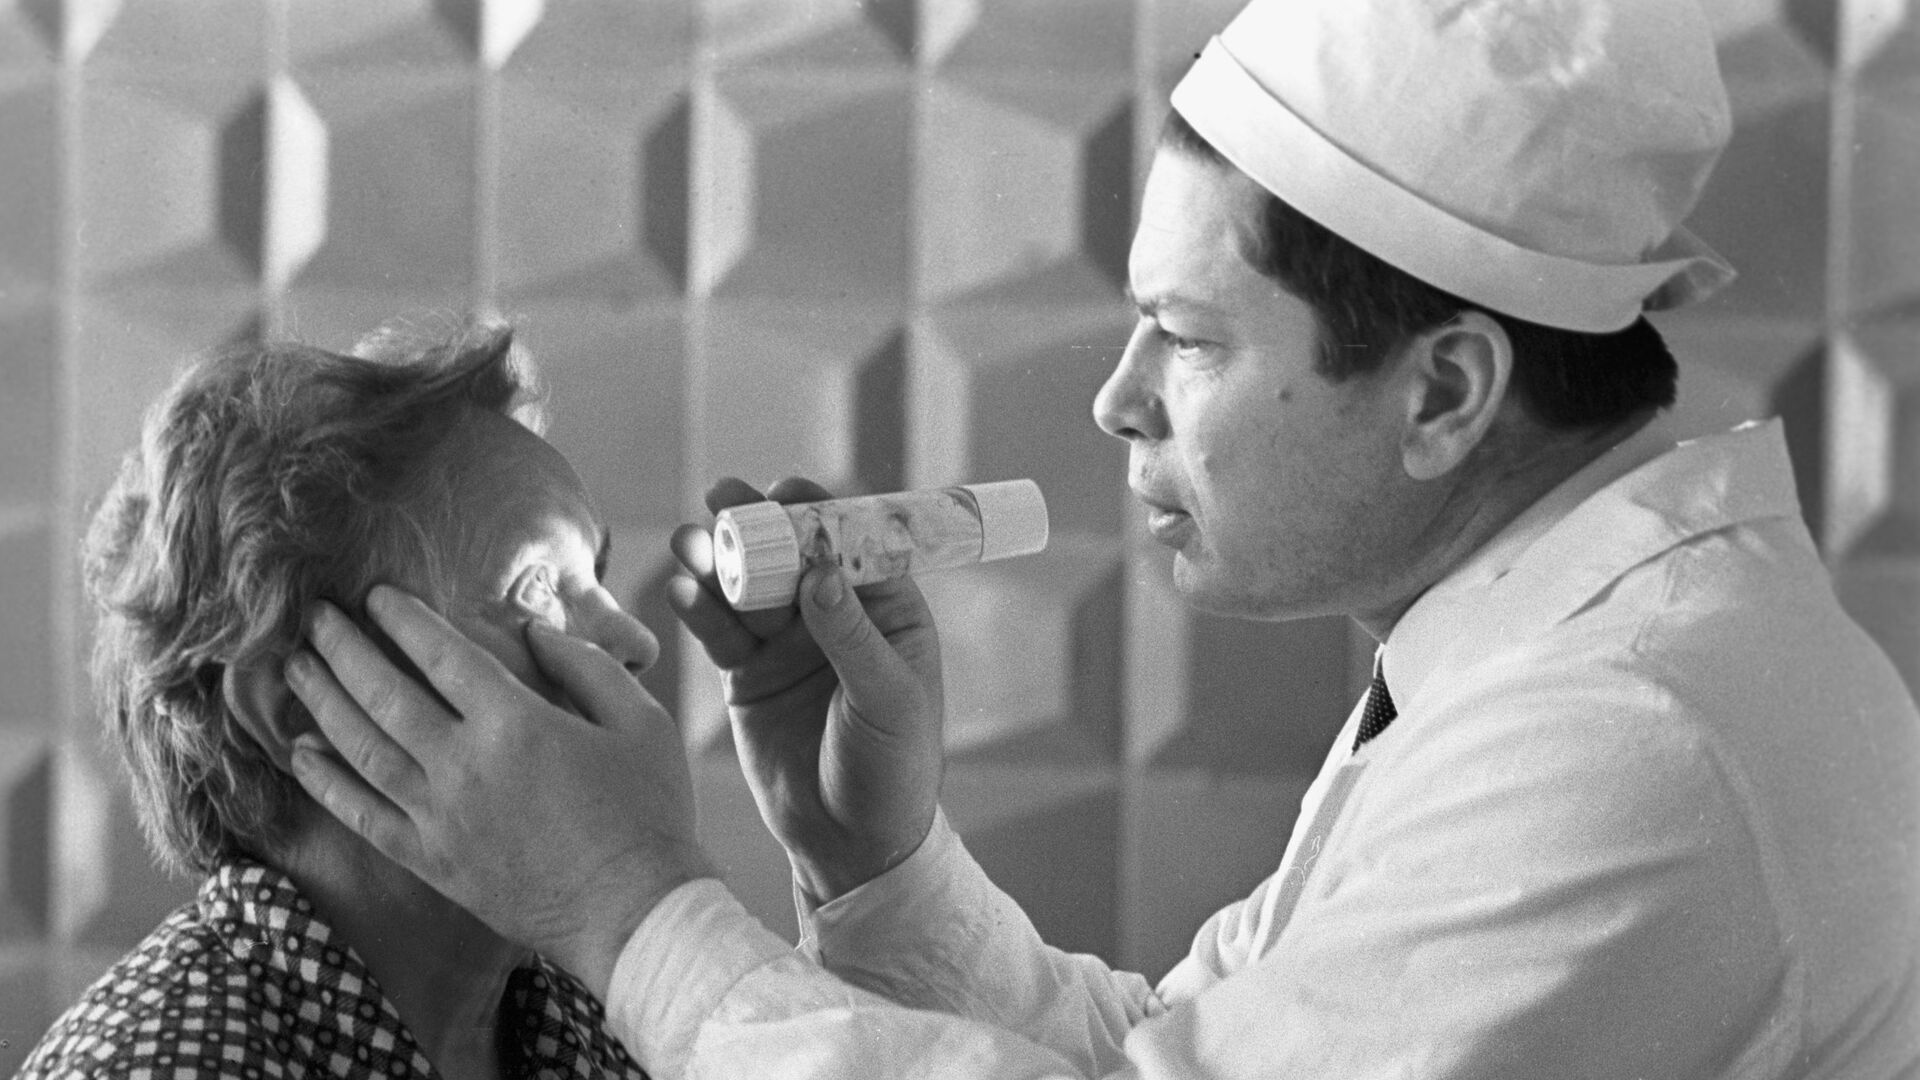 Բժիշկը զննում է հիվանդին - Sputnik Արմենիա, 1920, 09.10.2021